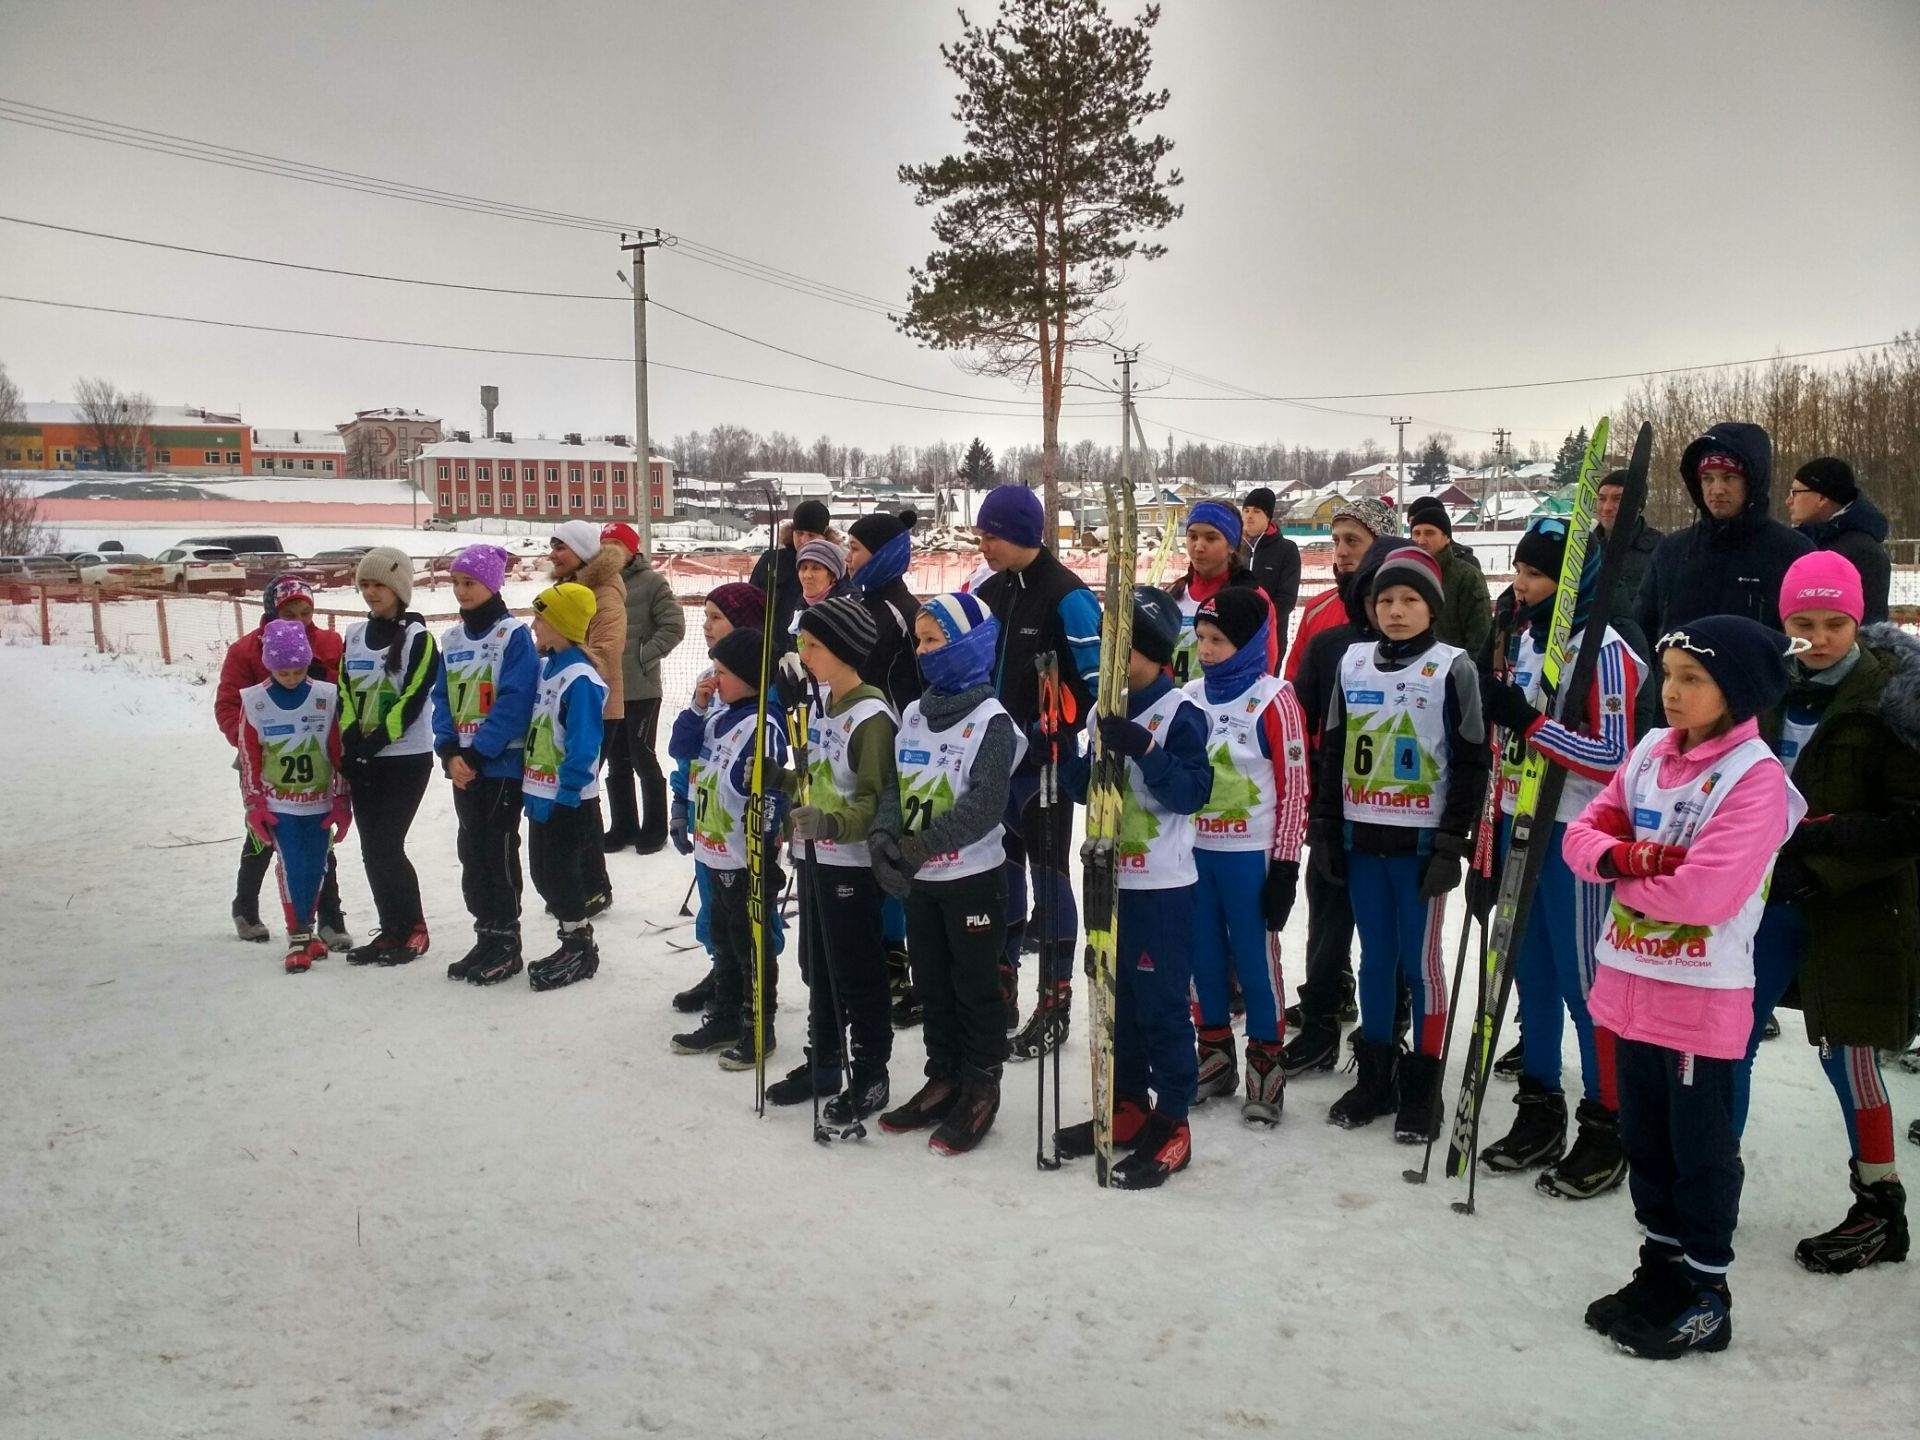 В Кукморском районе состоялись лыжные гонки на призы валяльно-войлочного комбината